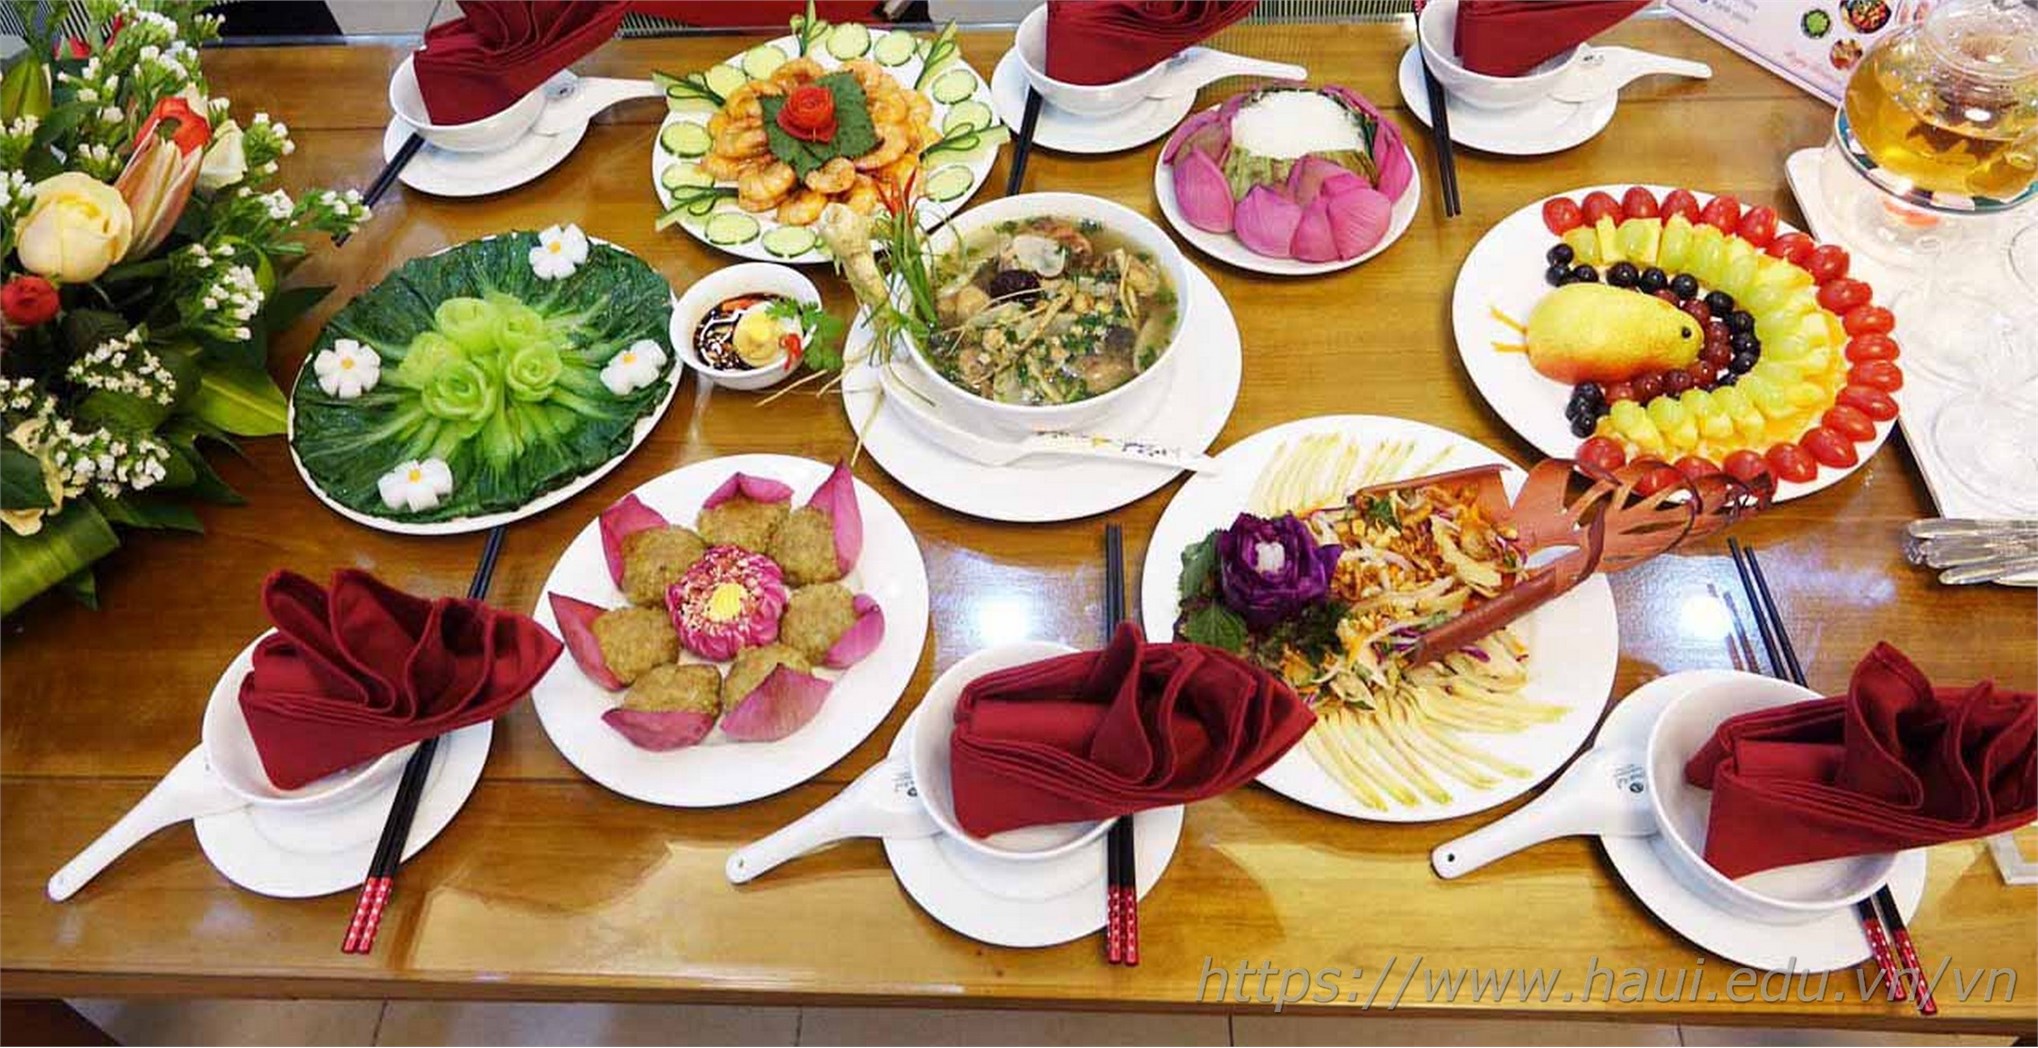 Rực rỡ và hấp dẫn tại Hội thi cắm hoa, nấu ăn, chào mừng kỷ niệm 90 năm ngày thành lập Hội liên hiệp Phụ nữ Việt Nam